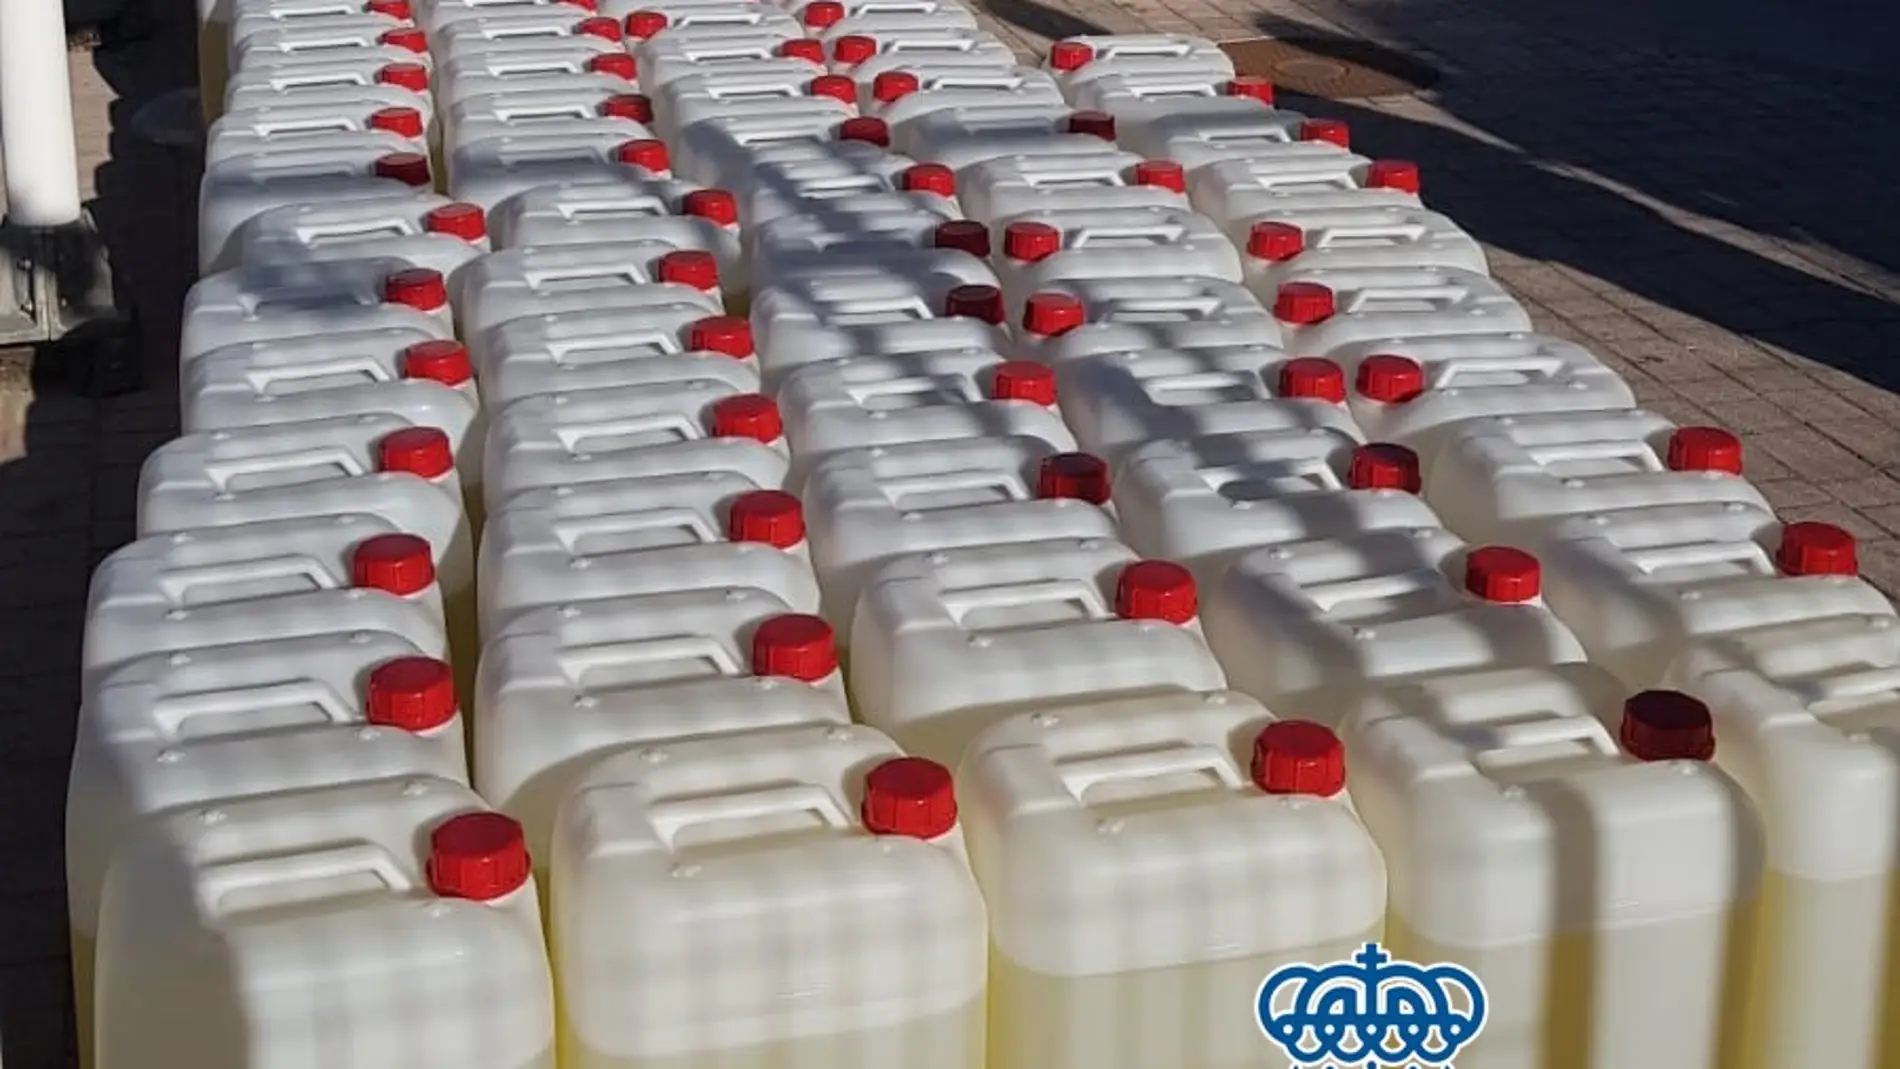 Garrafas llenas de combustible para narcolanchas en una gasolinera de Jerez